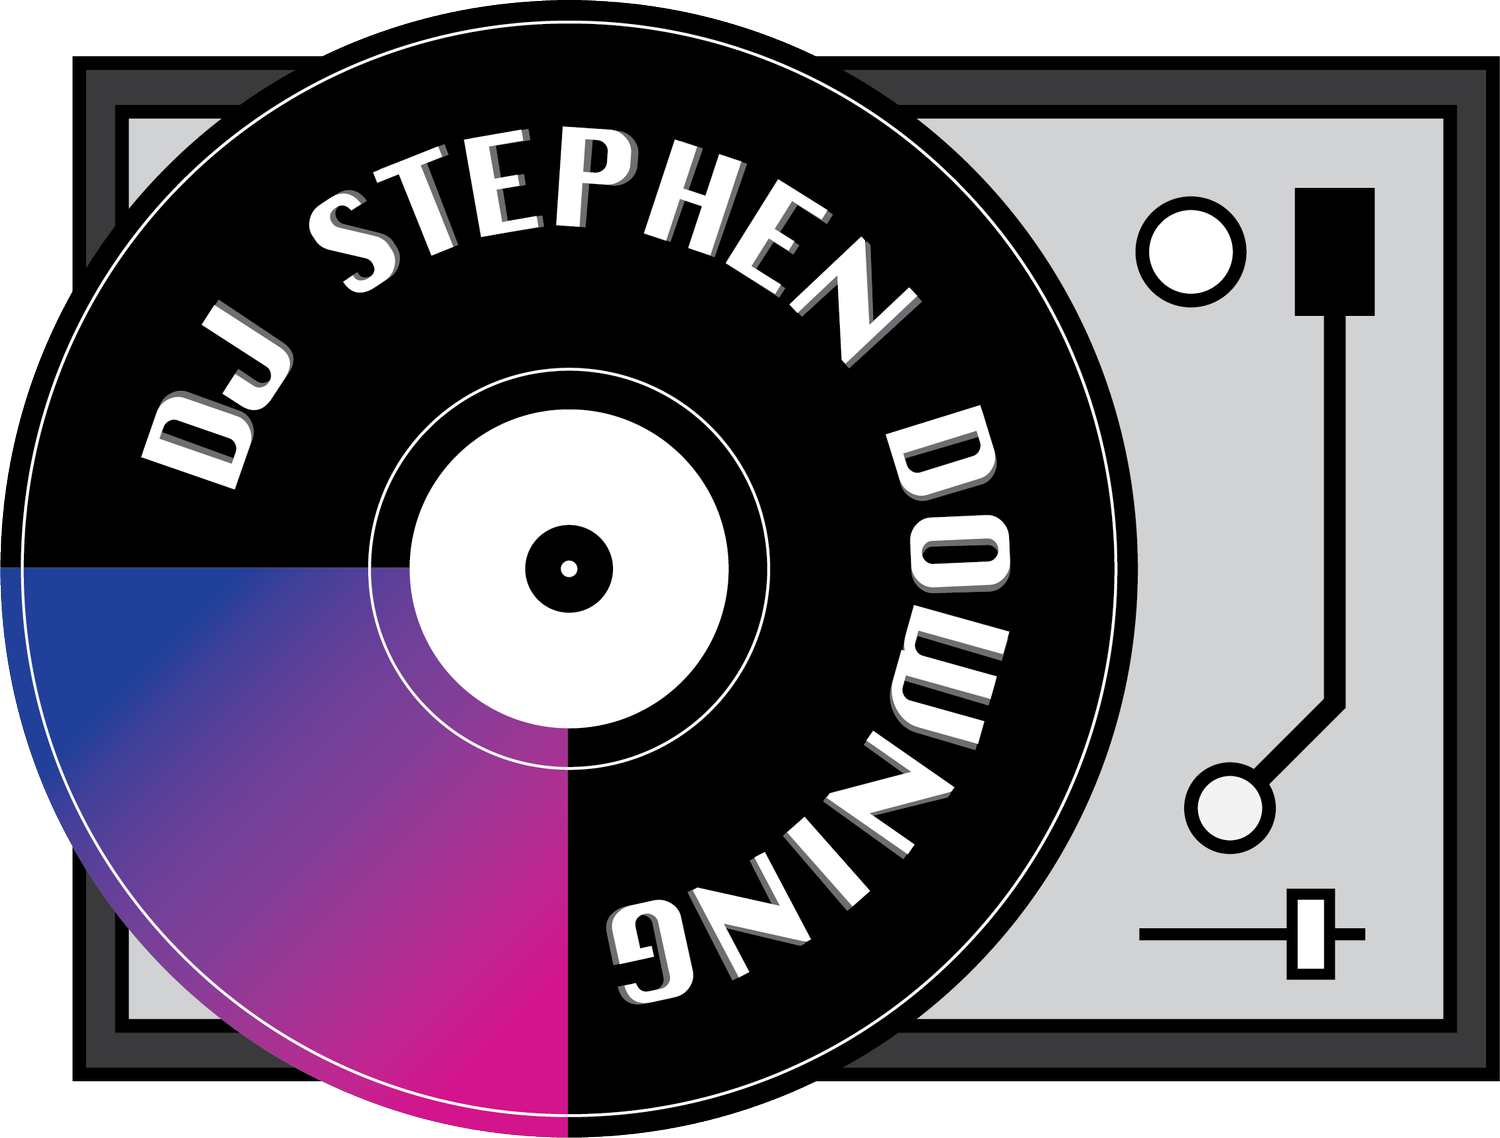 DJ Stephen